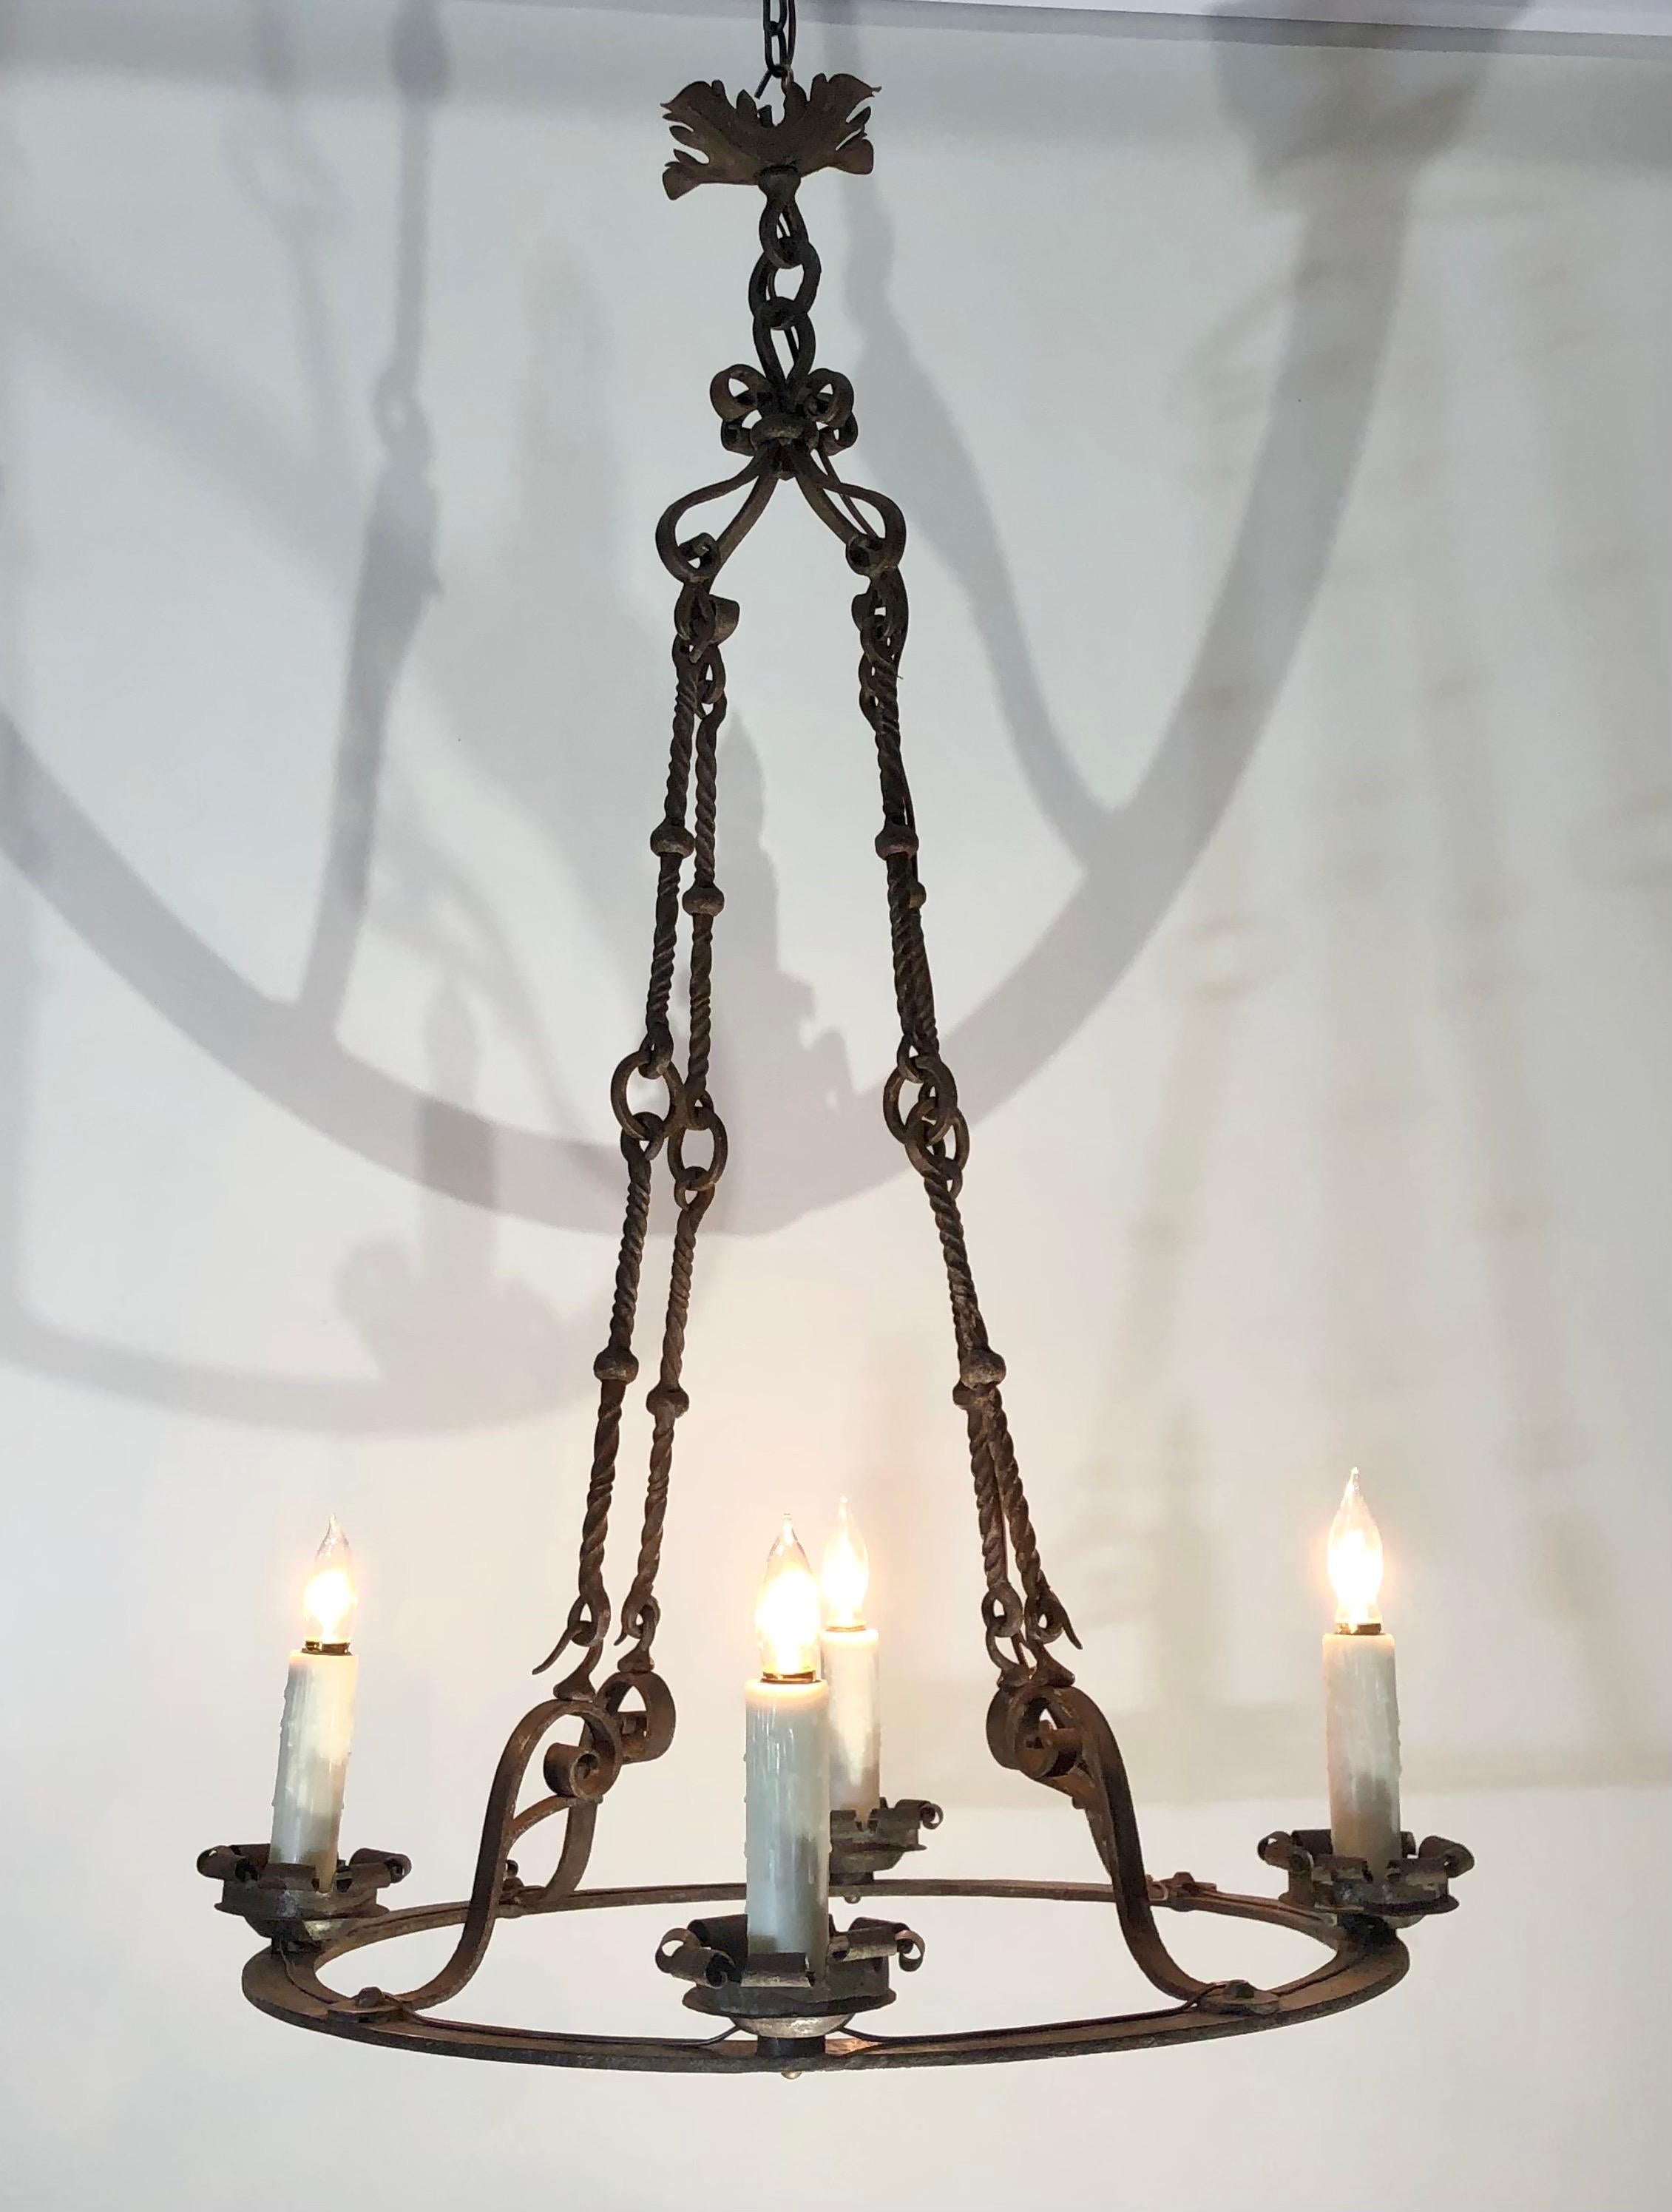 Dieser französische kreisförmige Kronleuchter aus handgeschmiedetem Eisen mit vier Lichtern wurde im 19. Jahrhundert hergestellt.  Die  Der runde, handgeschmiedete Eisenring hat vier schmiedeeiserne Bögen und war ursprünglich eine Kerze.   Der